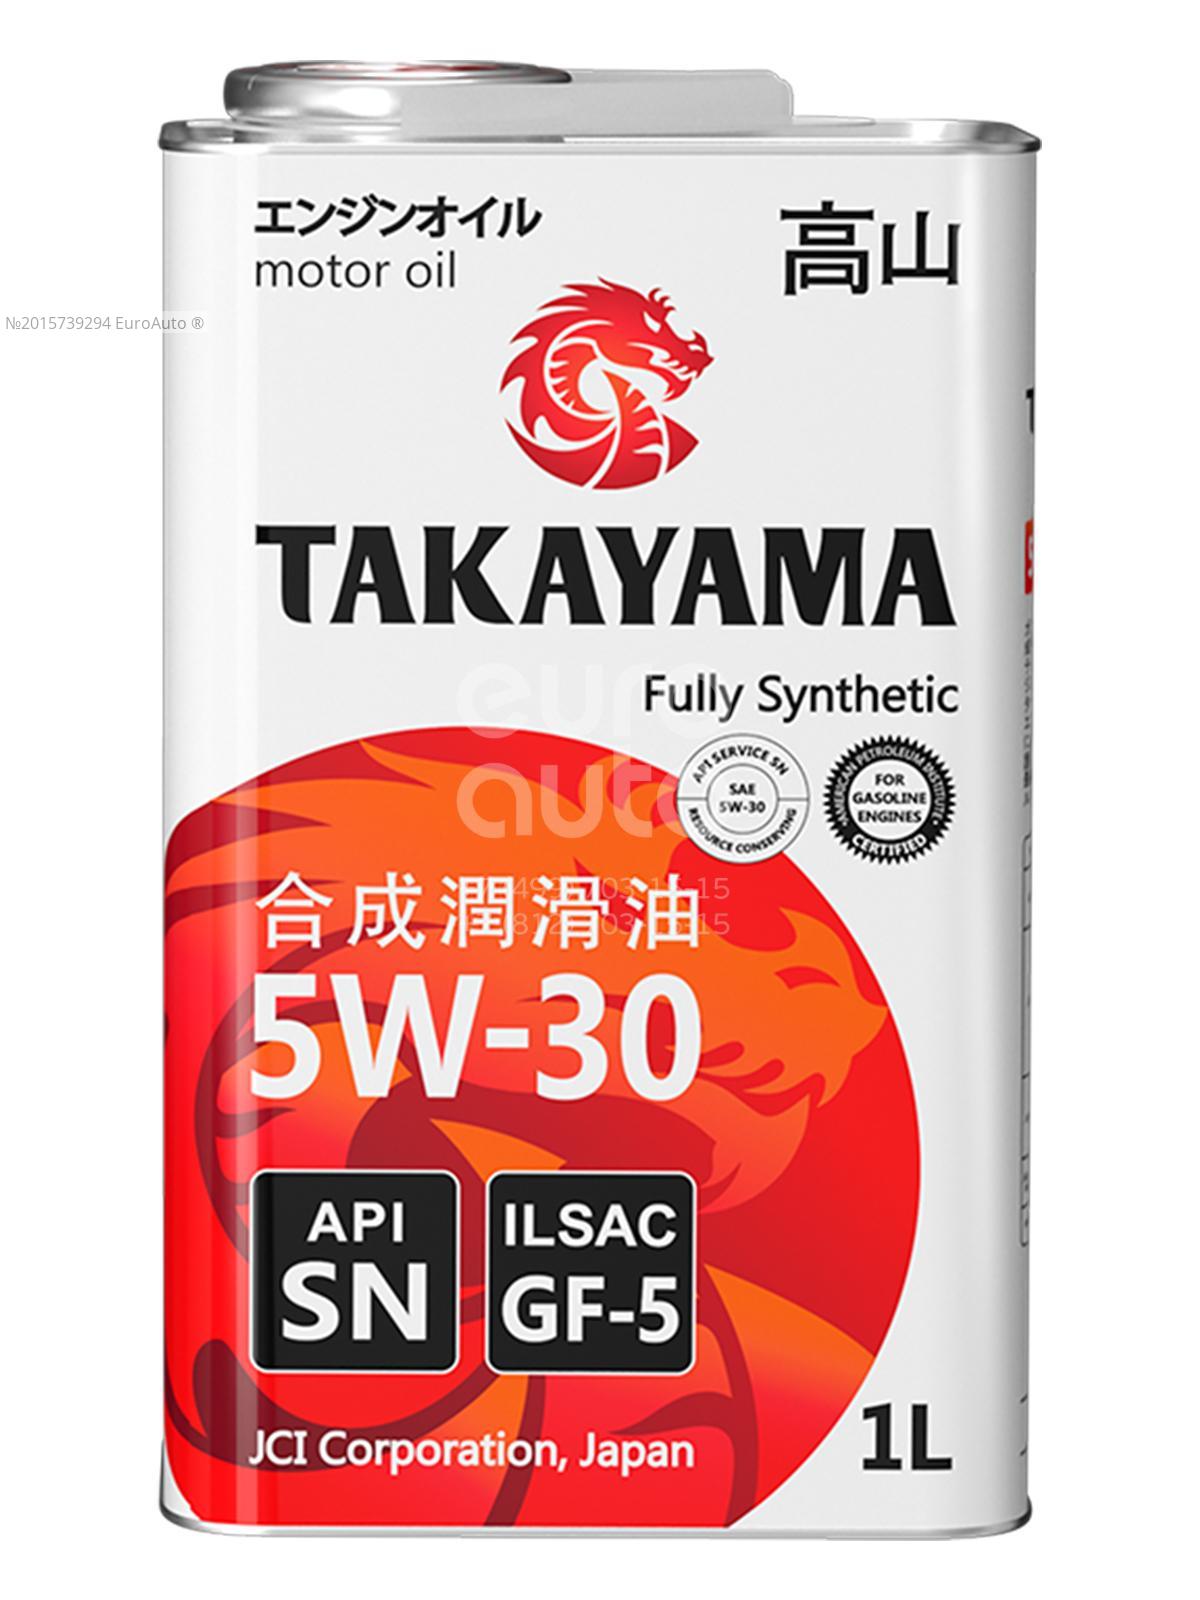 Масло такаяма 5w30 купить. Takayama 5w30 gf-5 1л. 5w30 ILSAC gf-5. Масло Takayama SAE 5w30, ILSAC gf-5, API SN (4л). Масло моторное Takayama 5w-30 gf-5 SN синт.